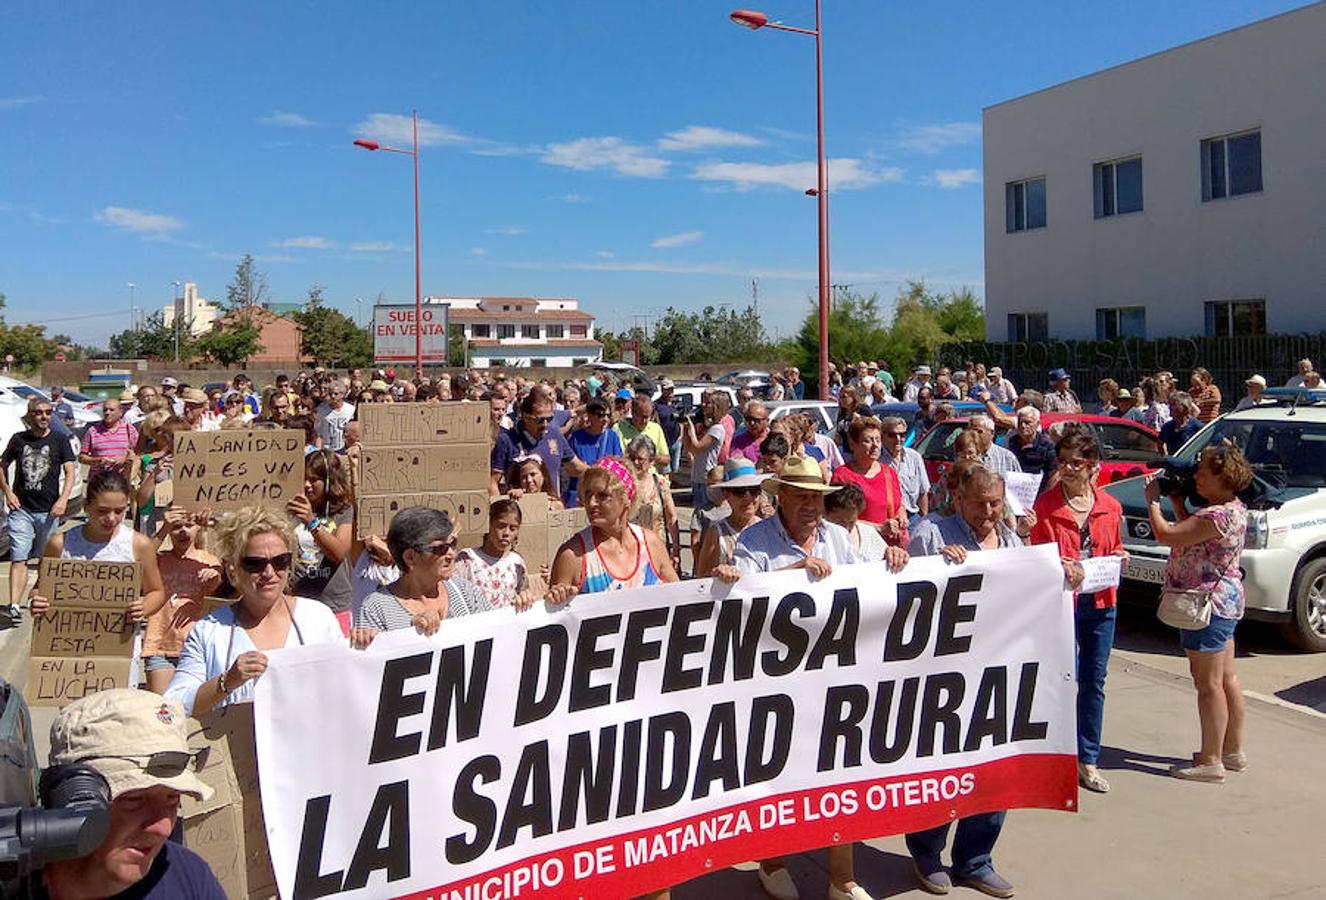 Fotos: Manifestación en Valencia de Don Juan